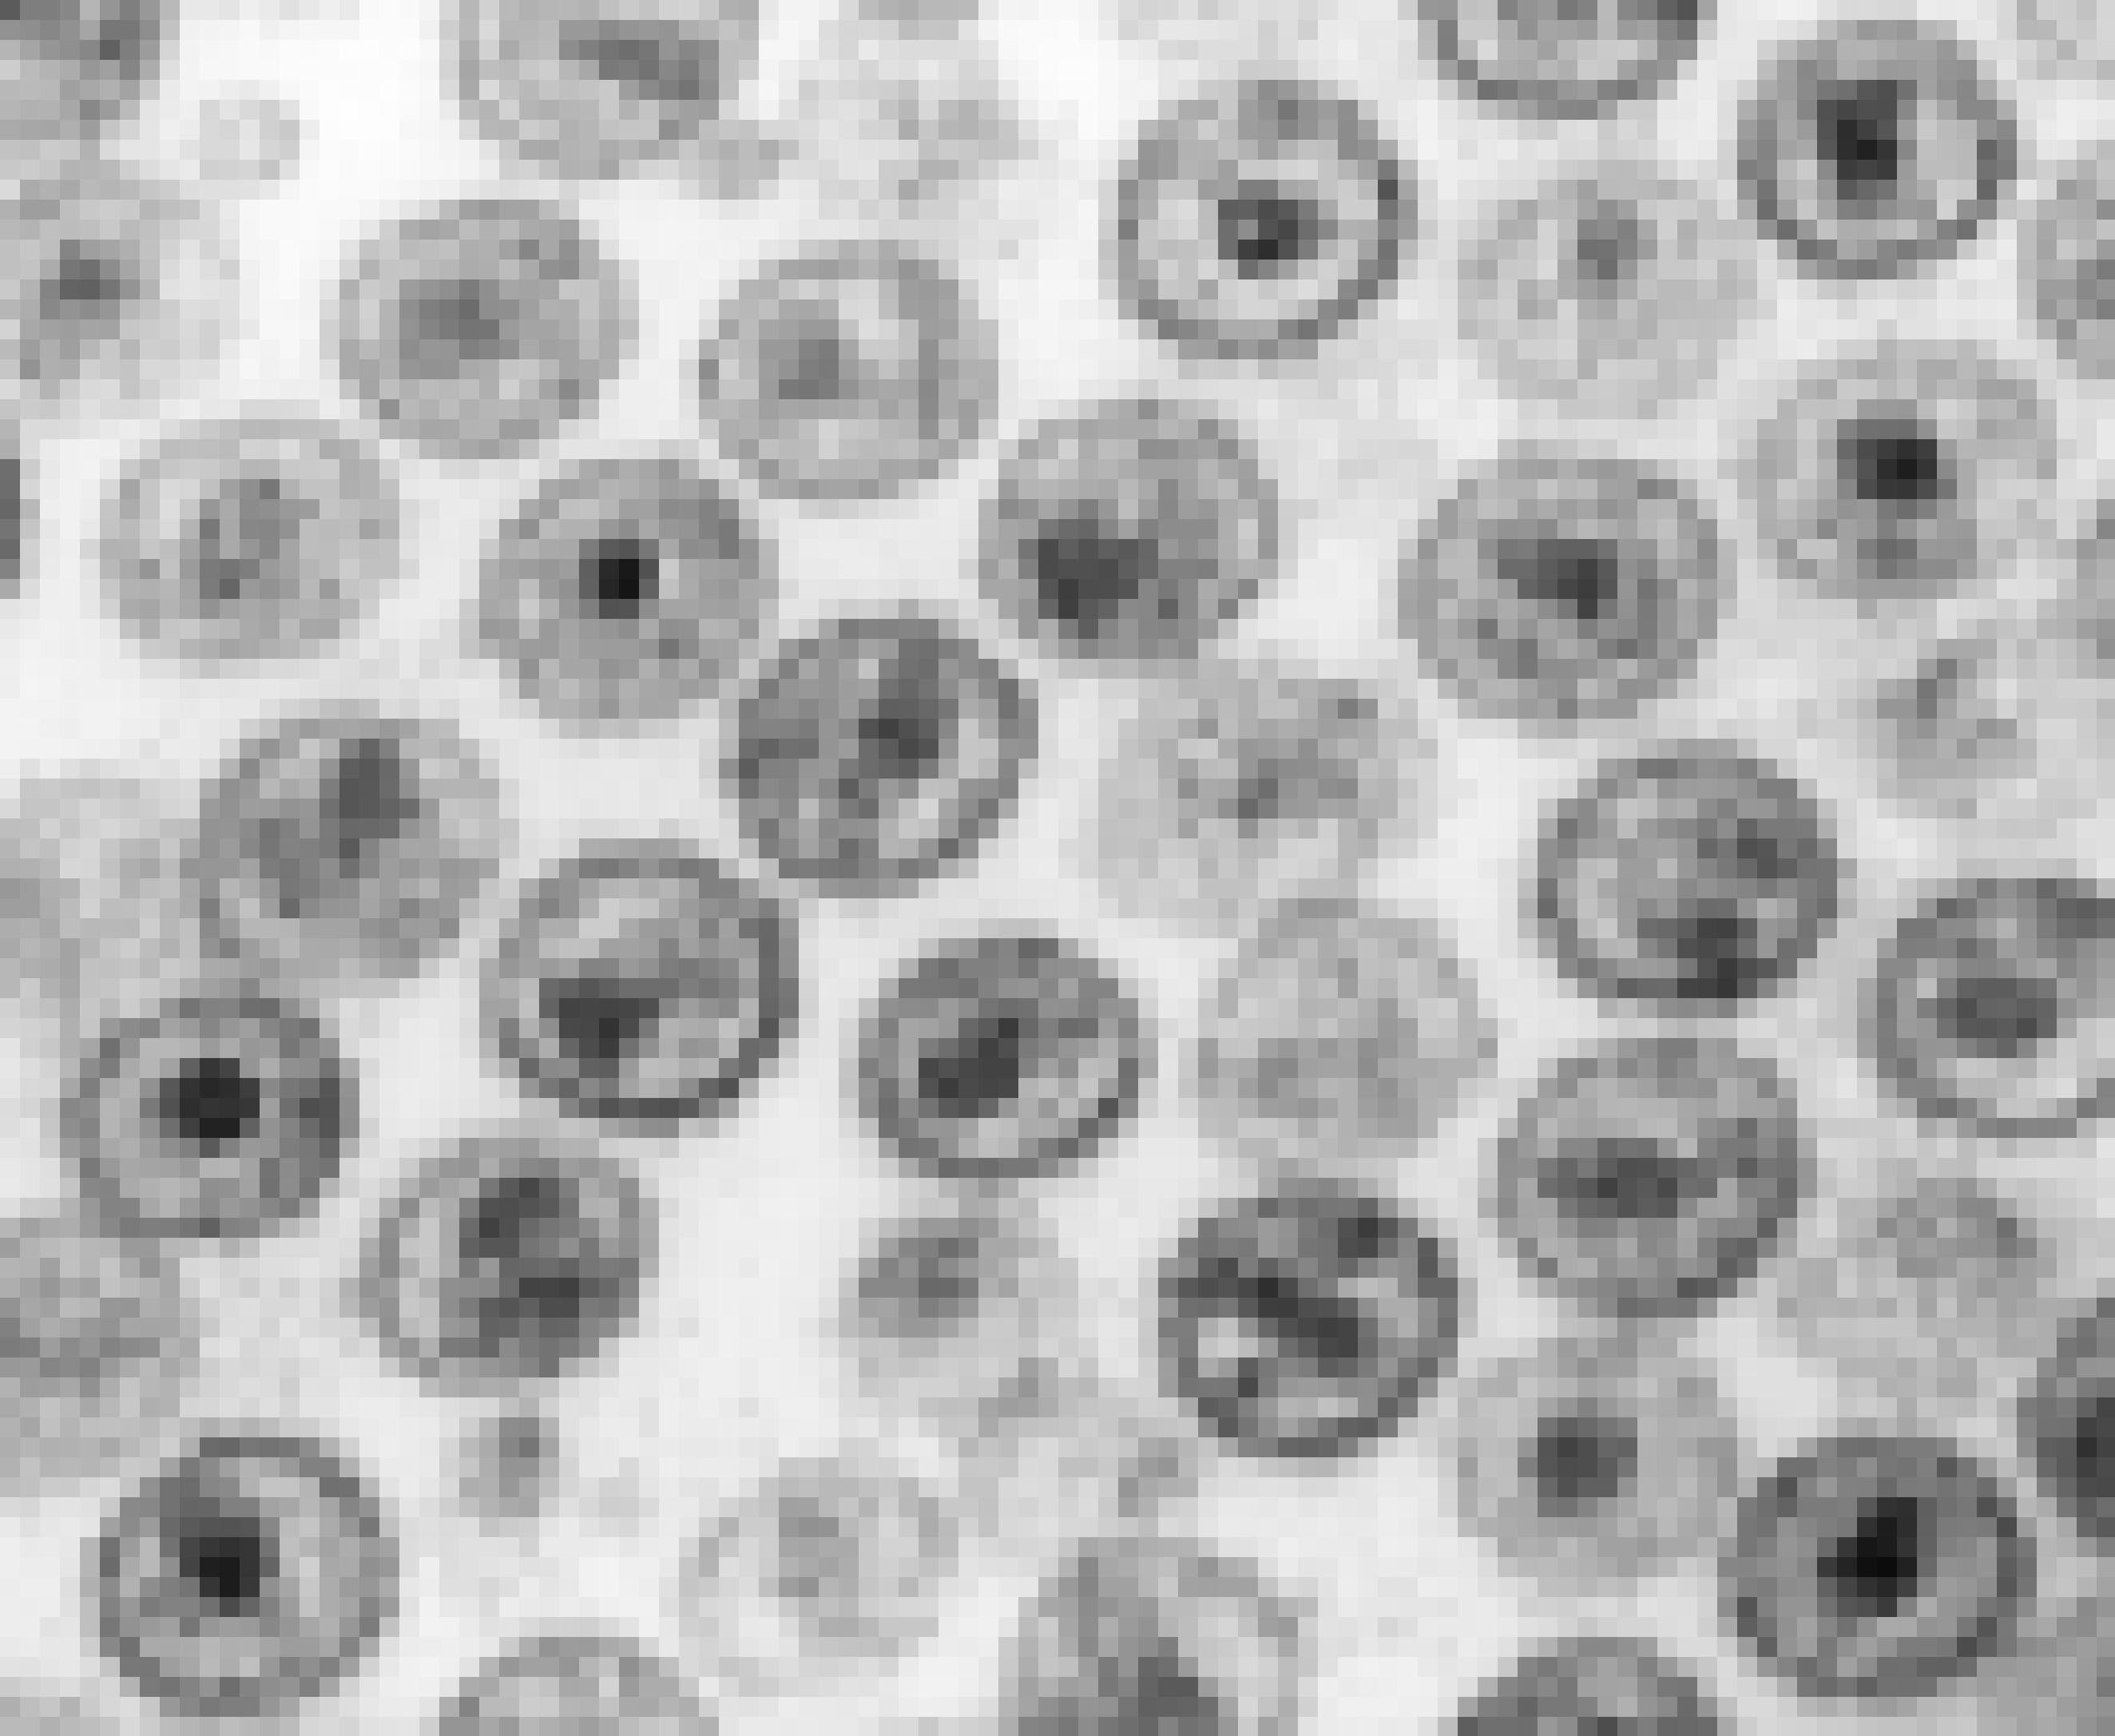 Zu sehen ist eine schwarz-weiß Aufnahme mit vielen runden Gebilden. Diese sind HI-Viren, die unter einem Mikroskop stark vergrößert wurden.